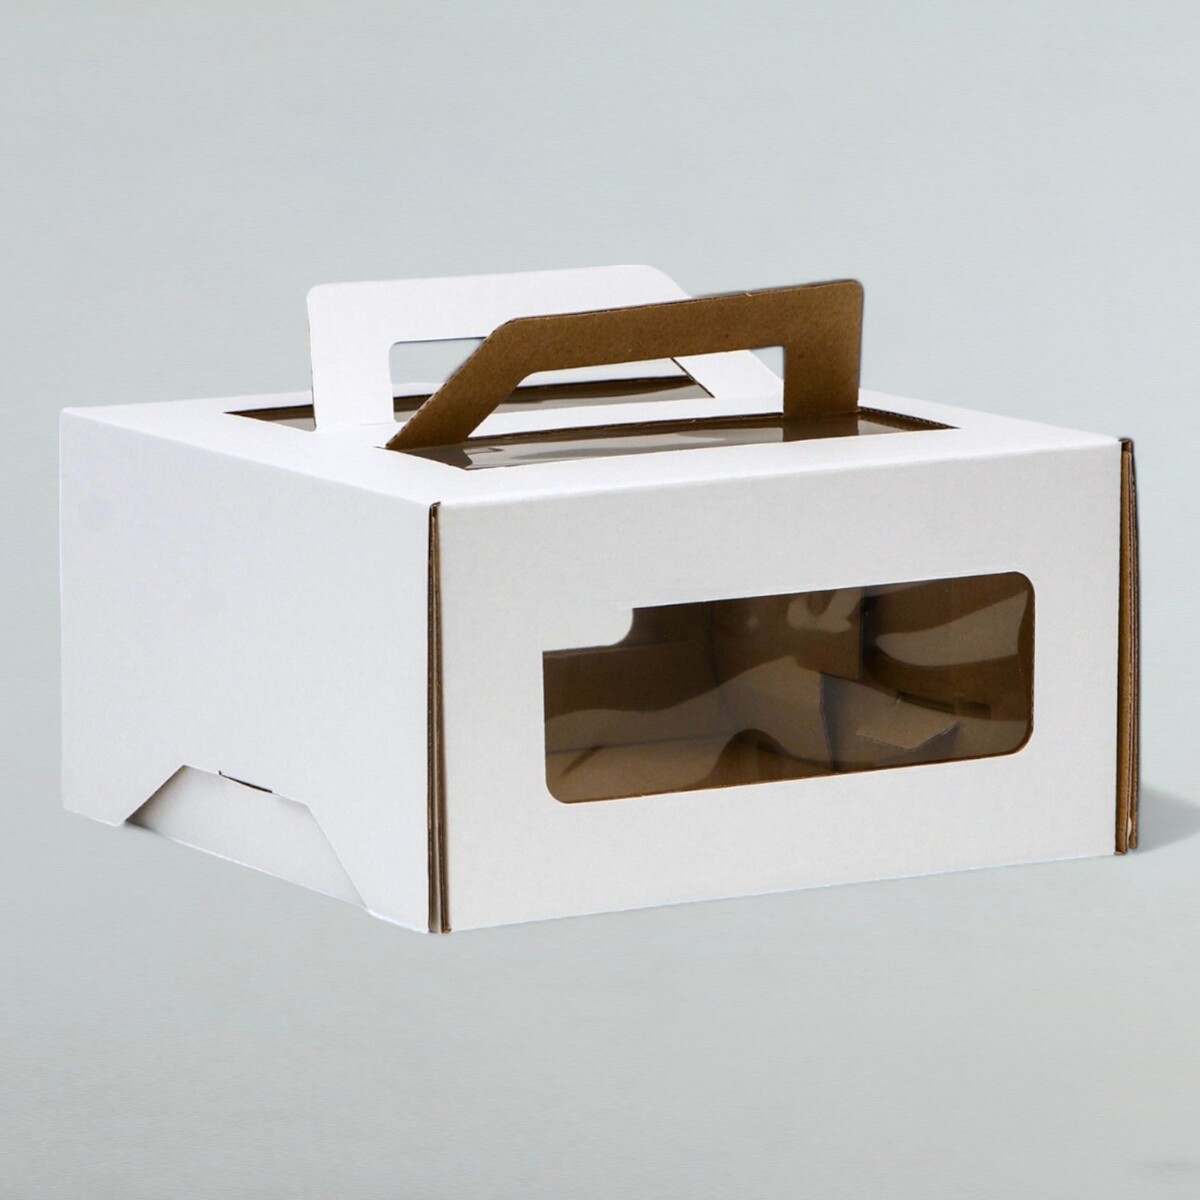 Коробка под торт 2 окна, с ручками, белая, 21 х 21 х 11 см зубочистки из березы magistro 300 шт в индивидуальной упаковке картонная коробка